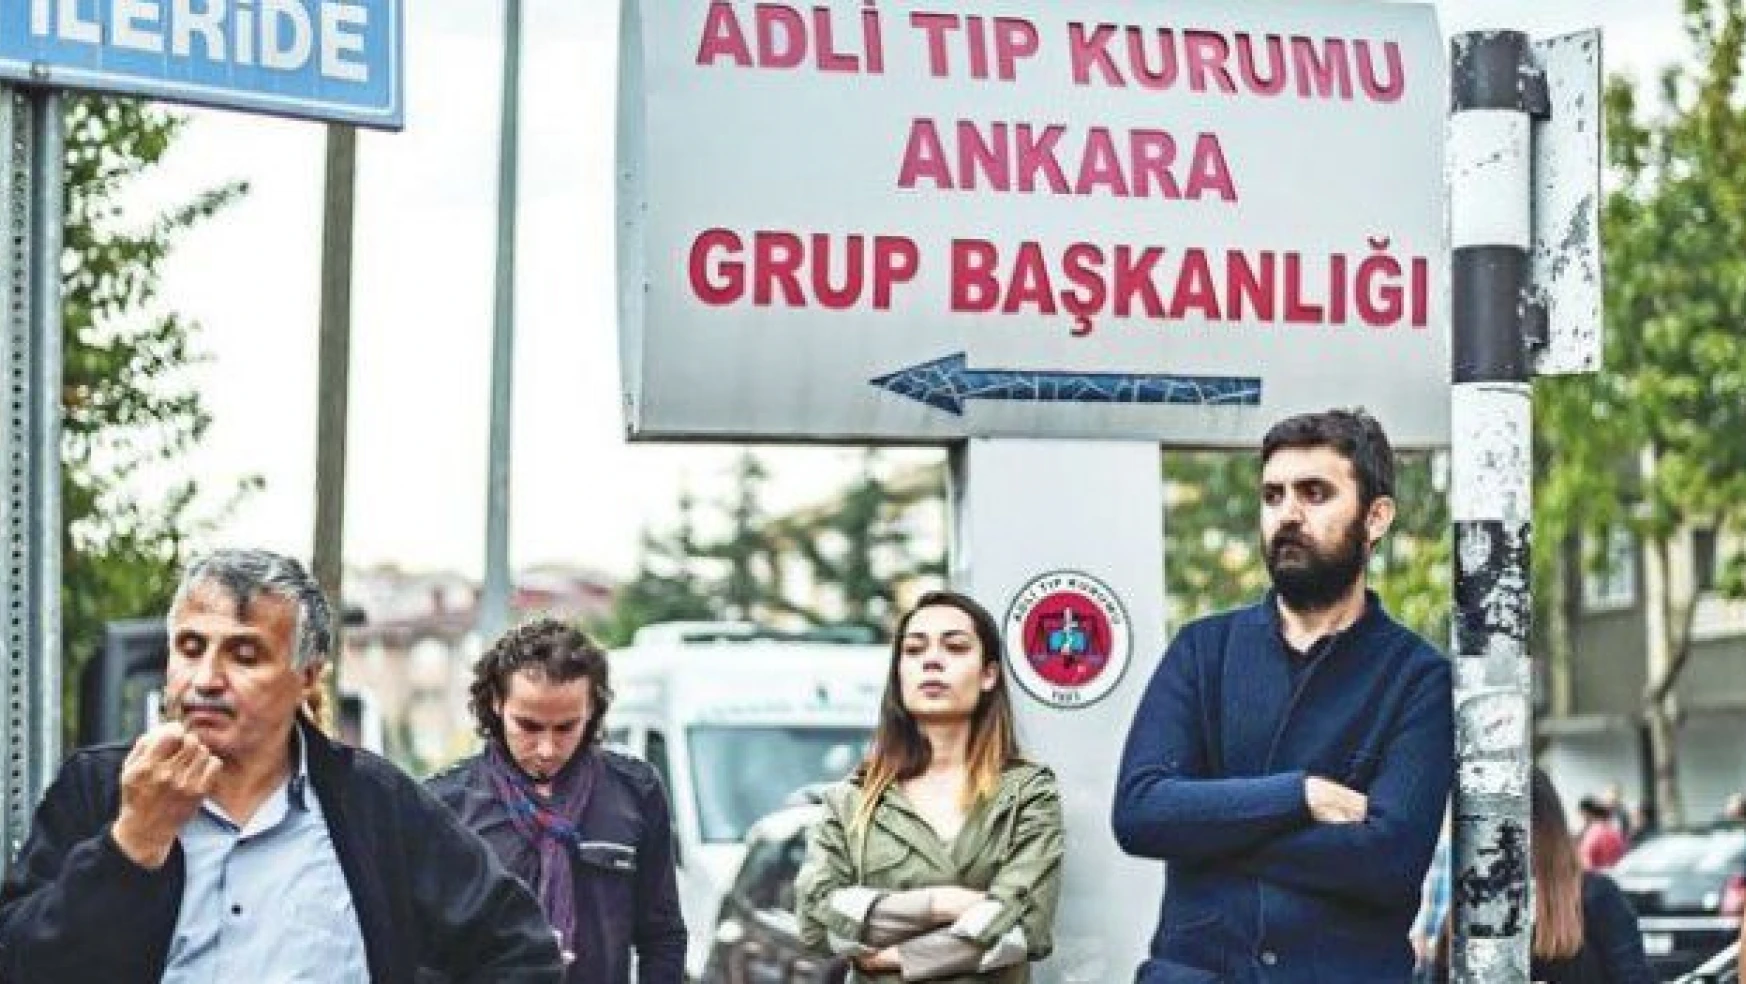 Ankara saldırısında kayıp konusunda çelişkili rakamlar